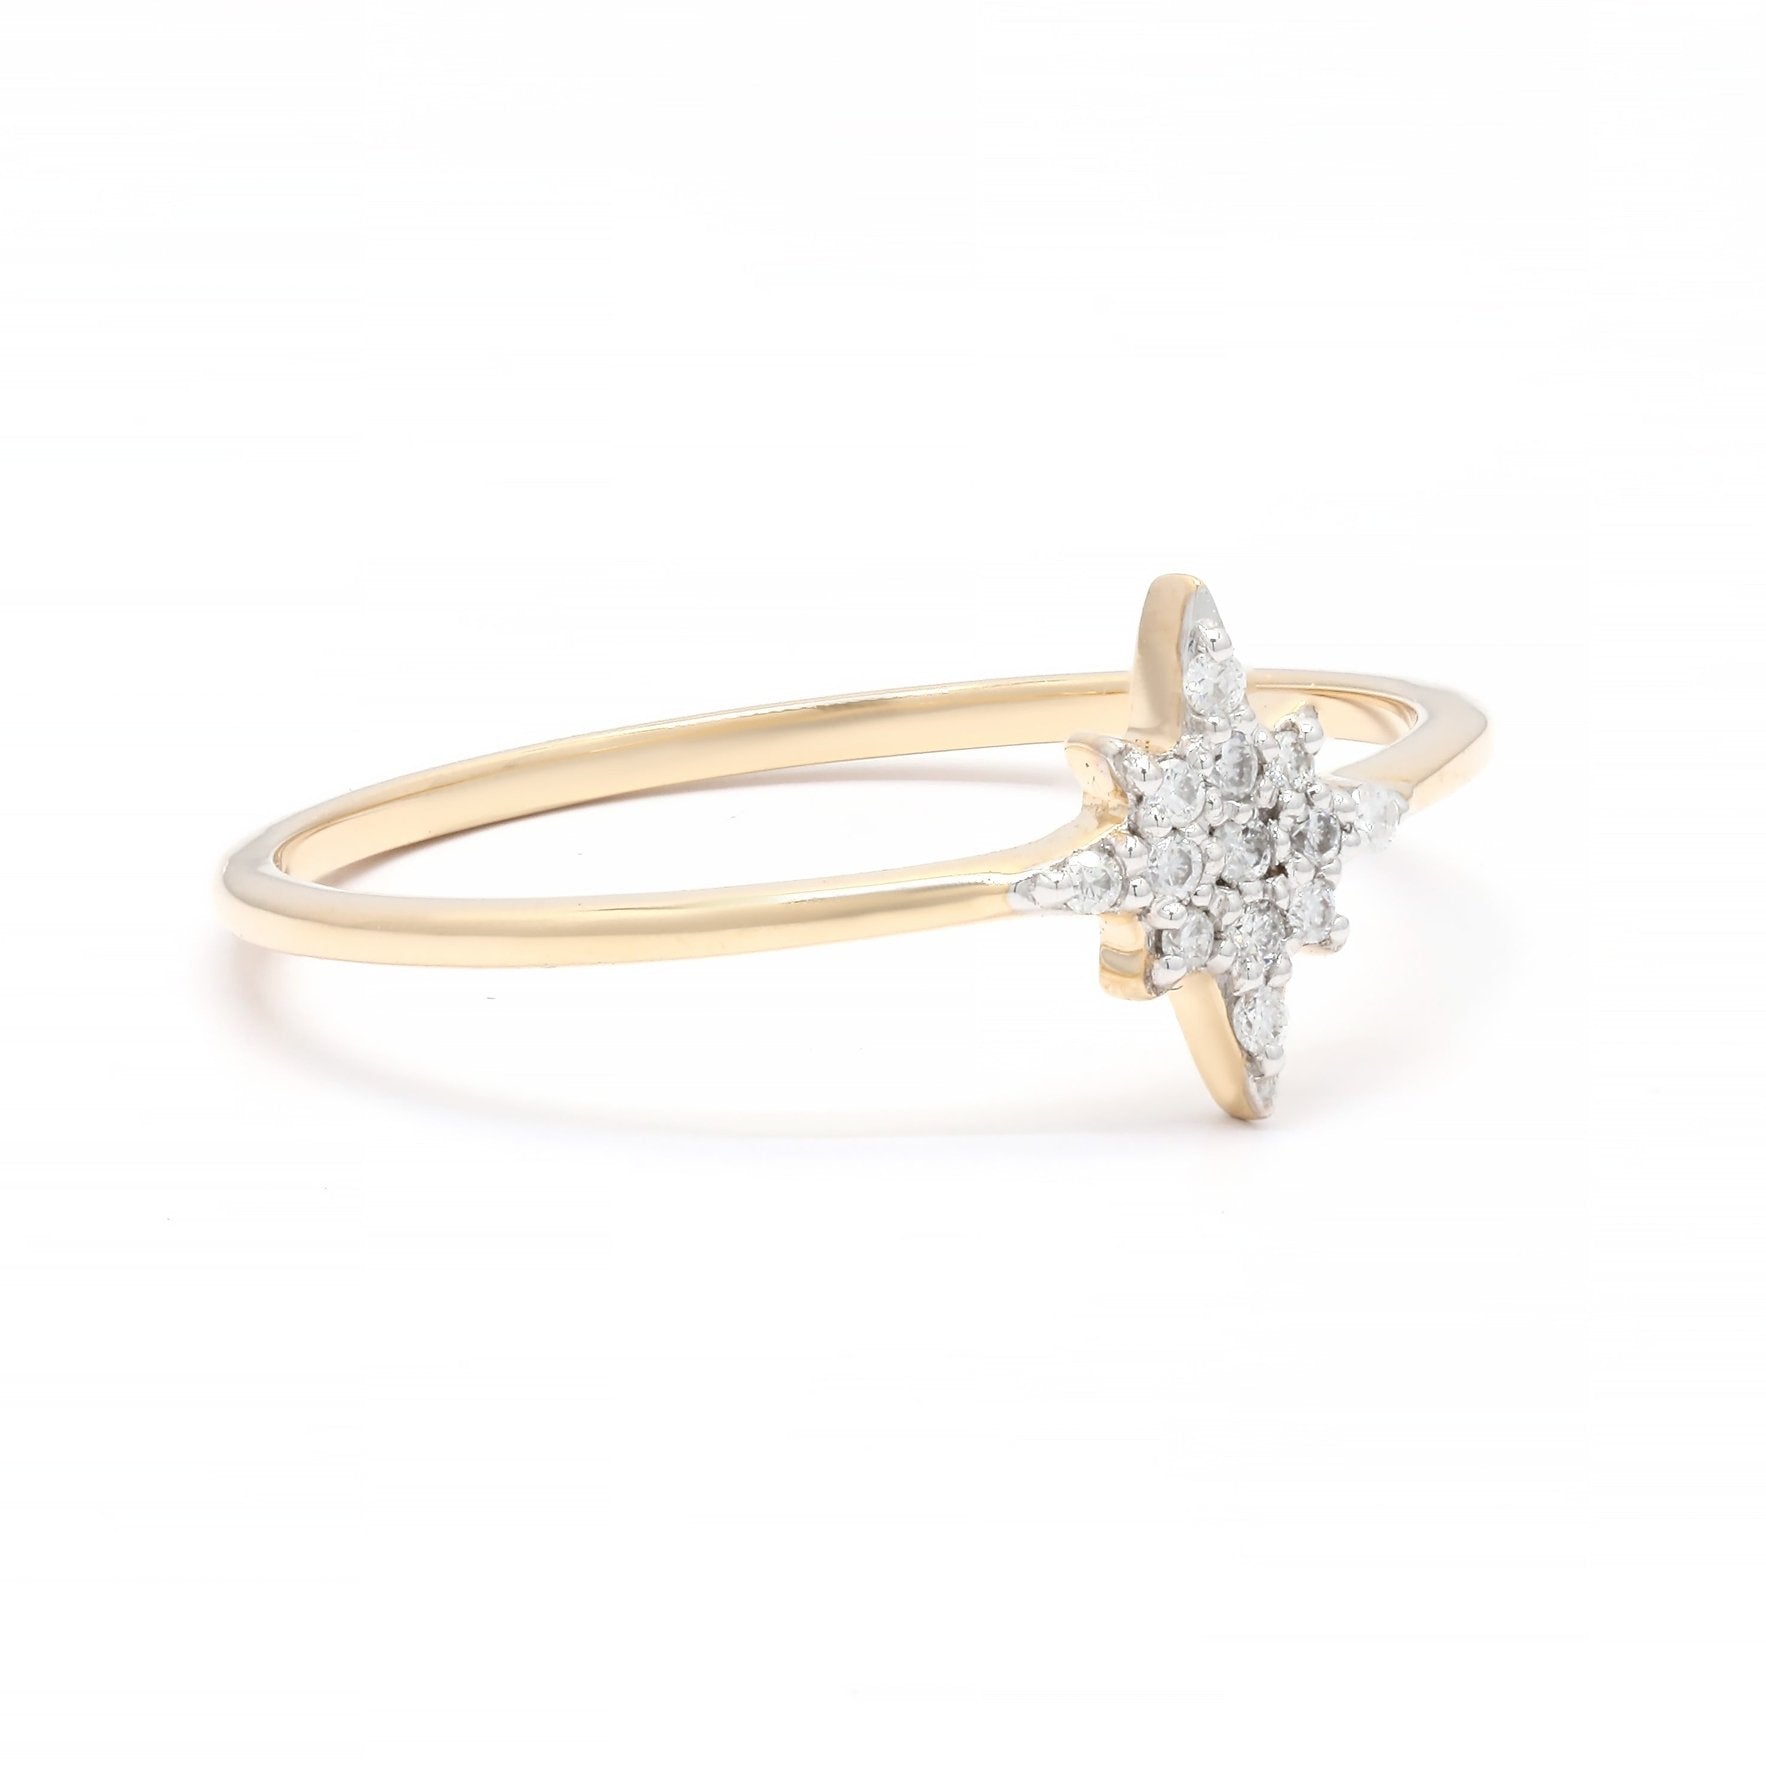 14K Gold Star Diamond Ring - VR Jewels